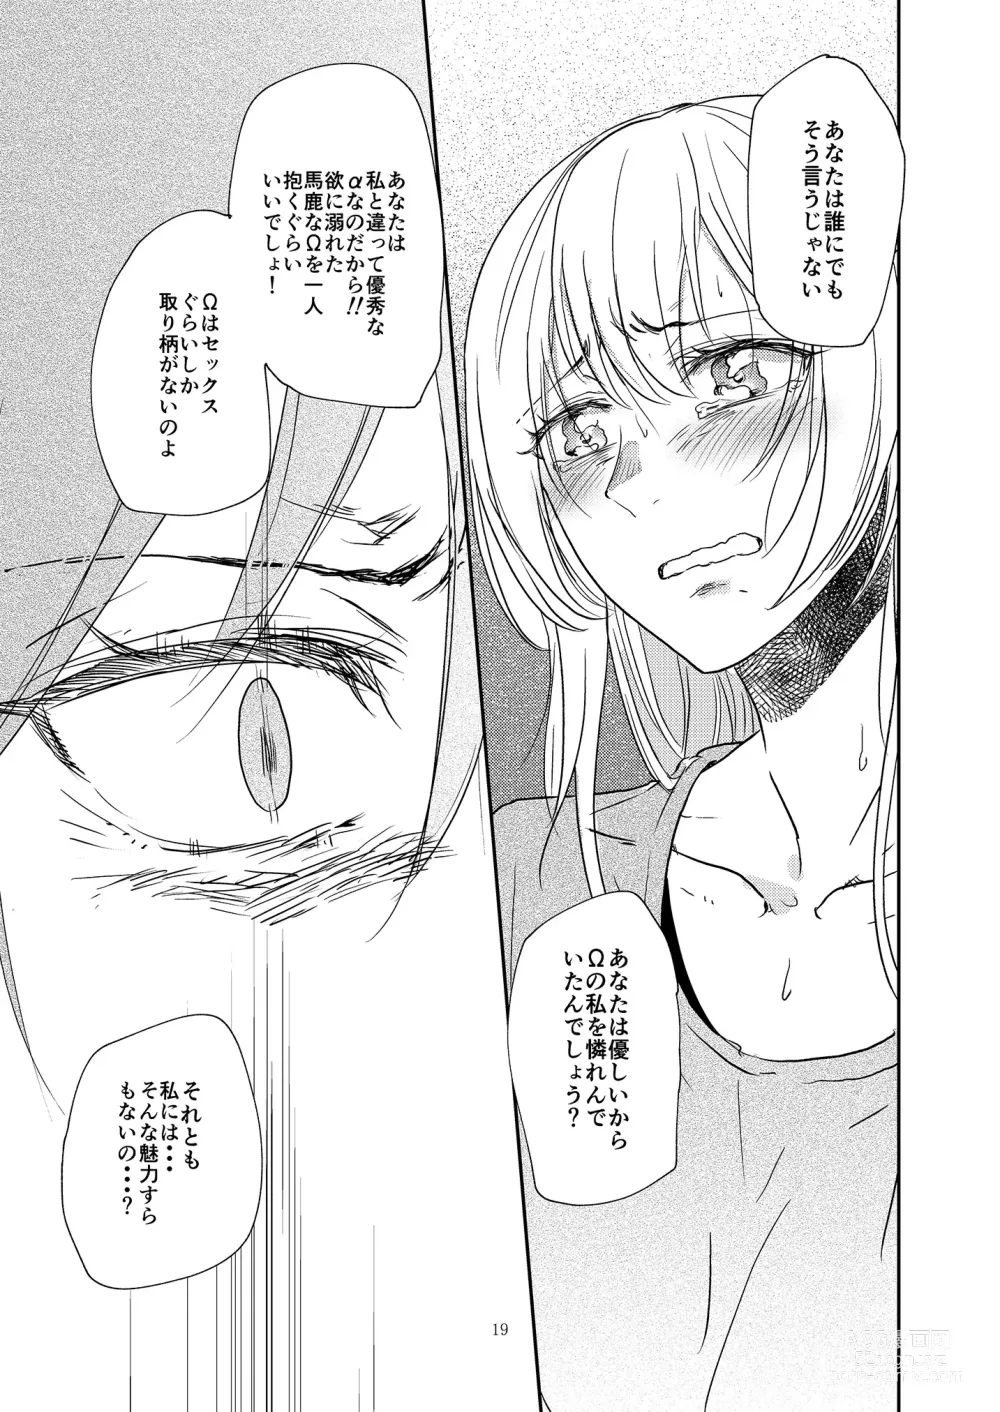 Page 19 of doujinshi Kimi no Tame ni Watashi ni wa